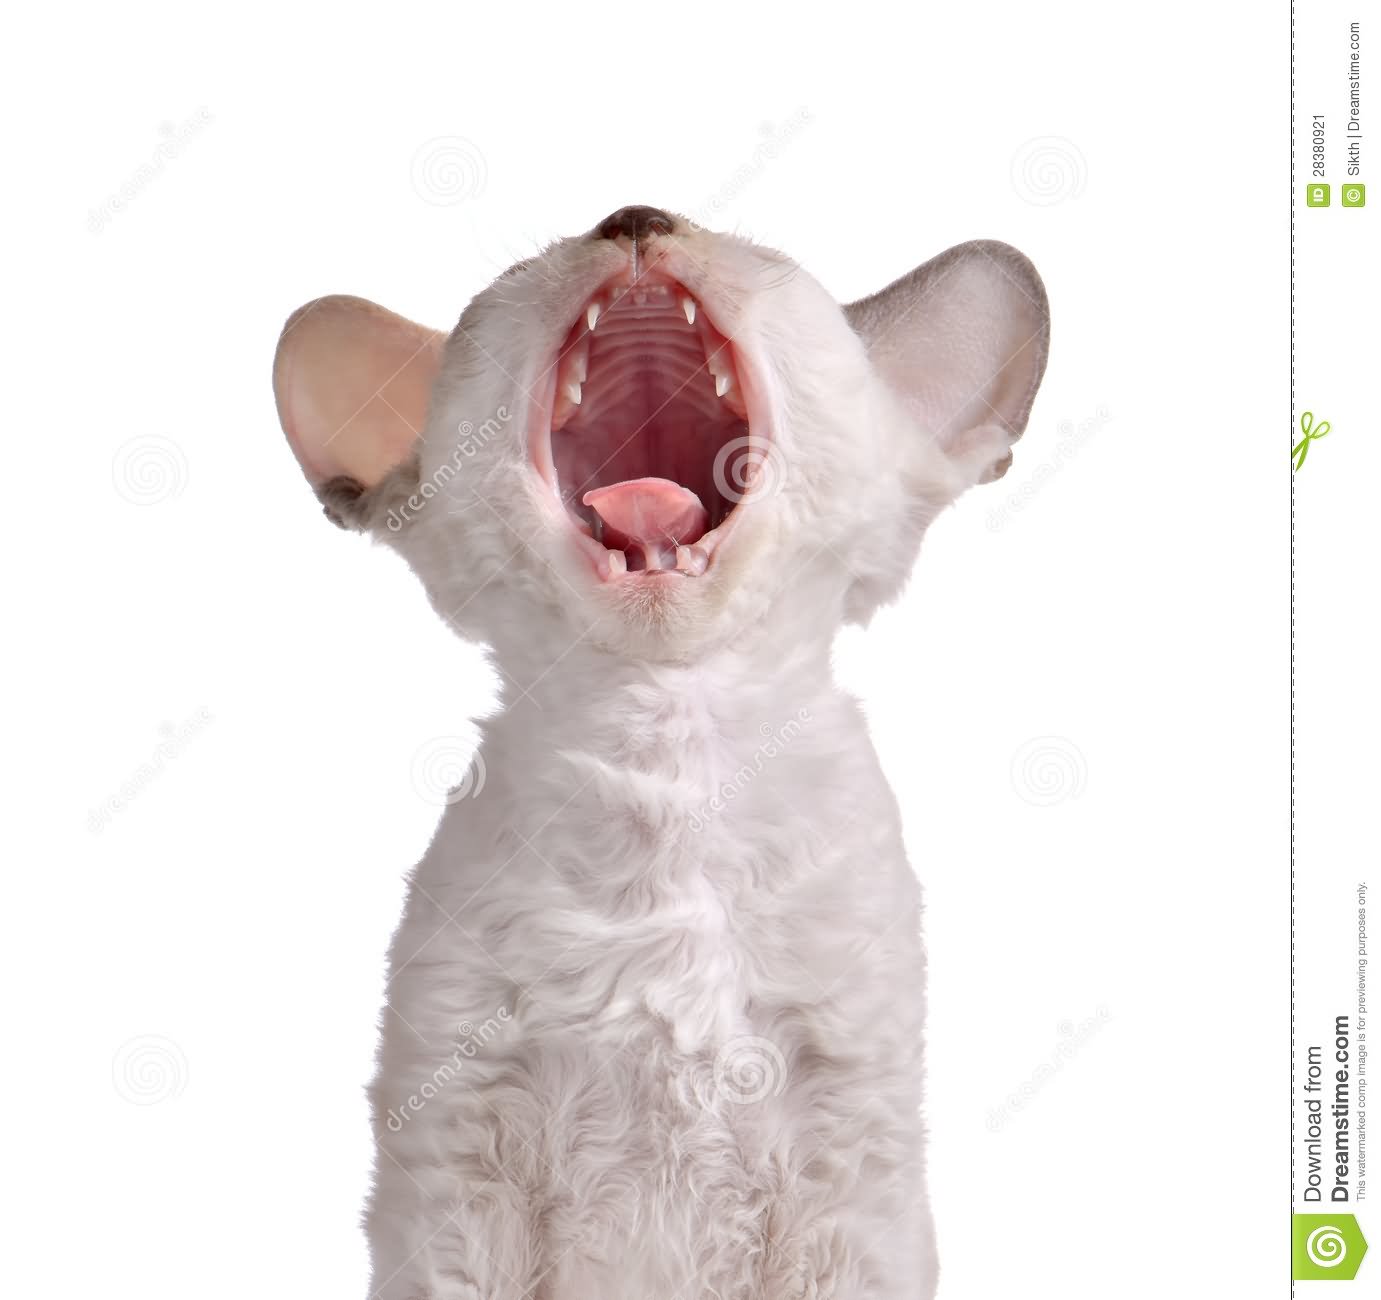 White Cornish Rex Kitten Yawning Picture